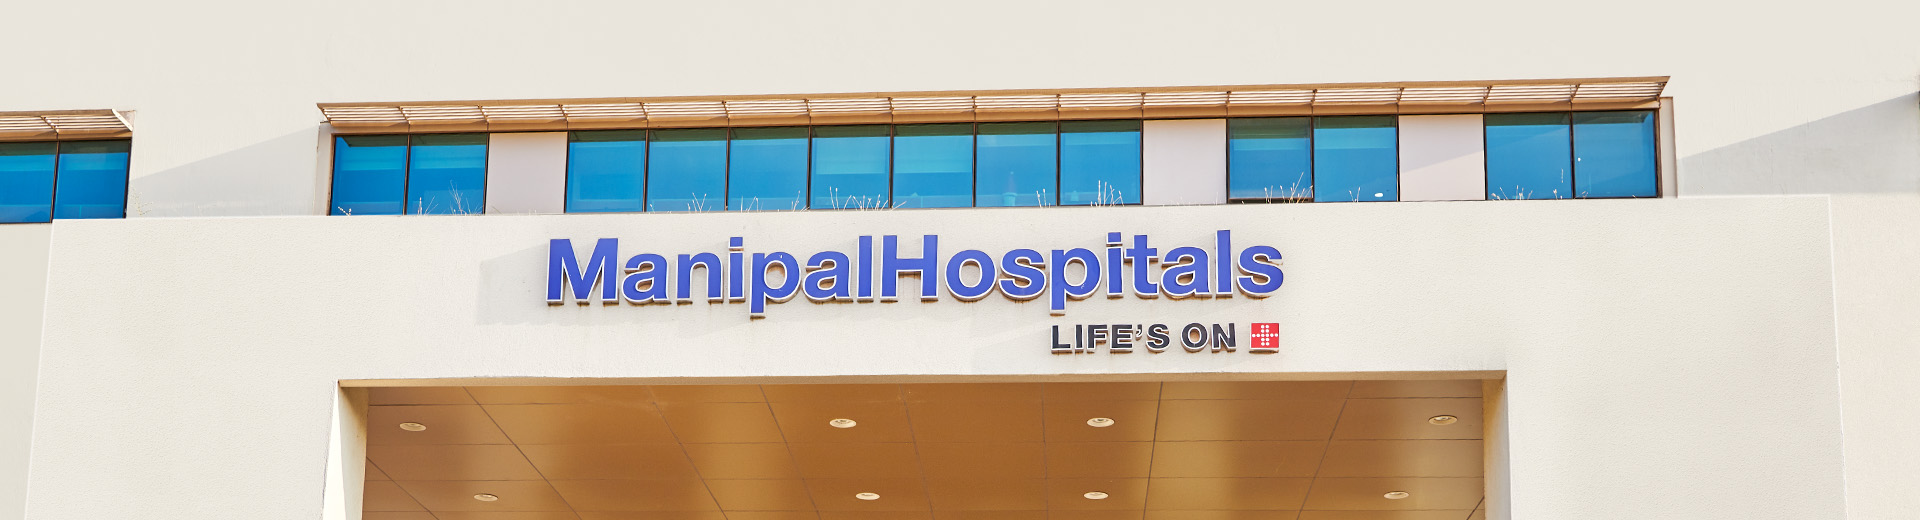 CSR Policy - Manipal Hospitals Vidhyadhar Nagar, Jaipur